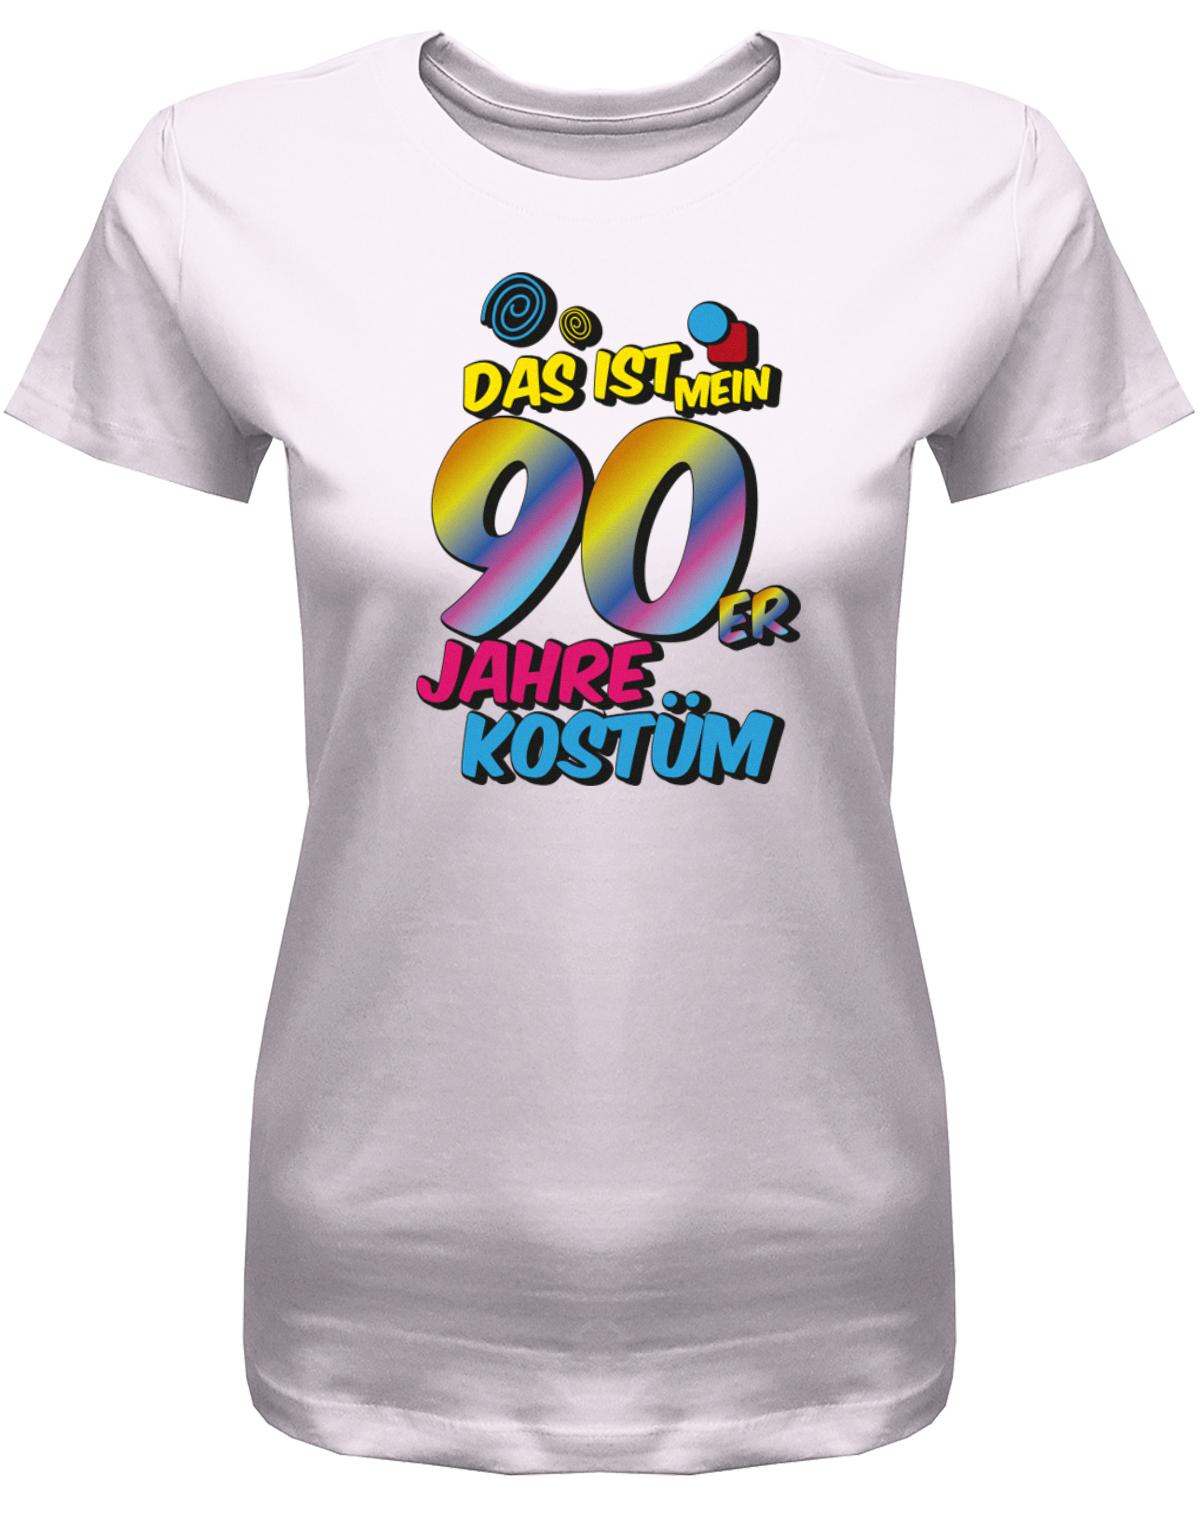 Das-ist-mein-90er-Jahre-Kost-m-Fasching-Karneval-Verkleidung-Shirt-Damen-Rosa